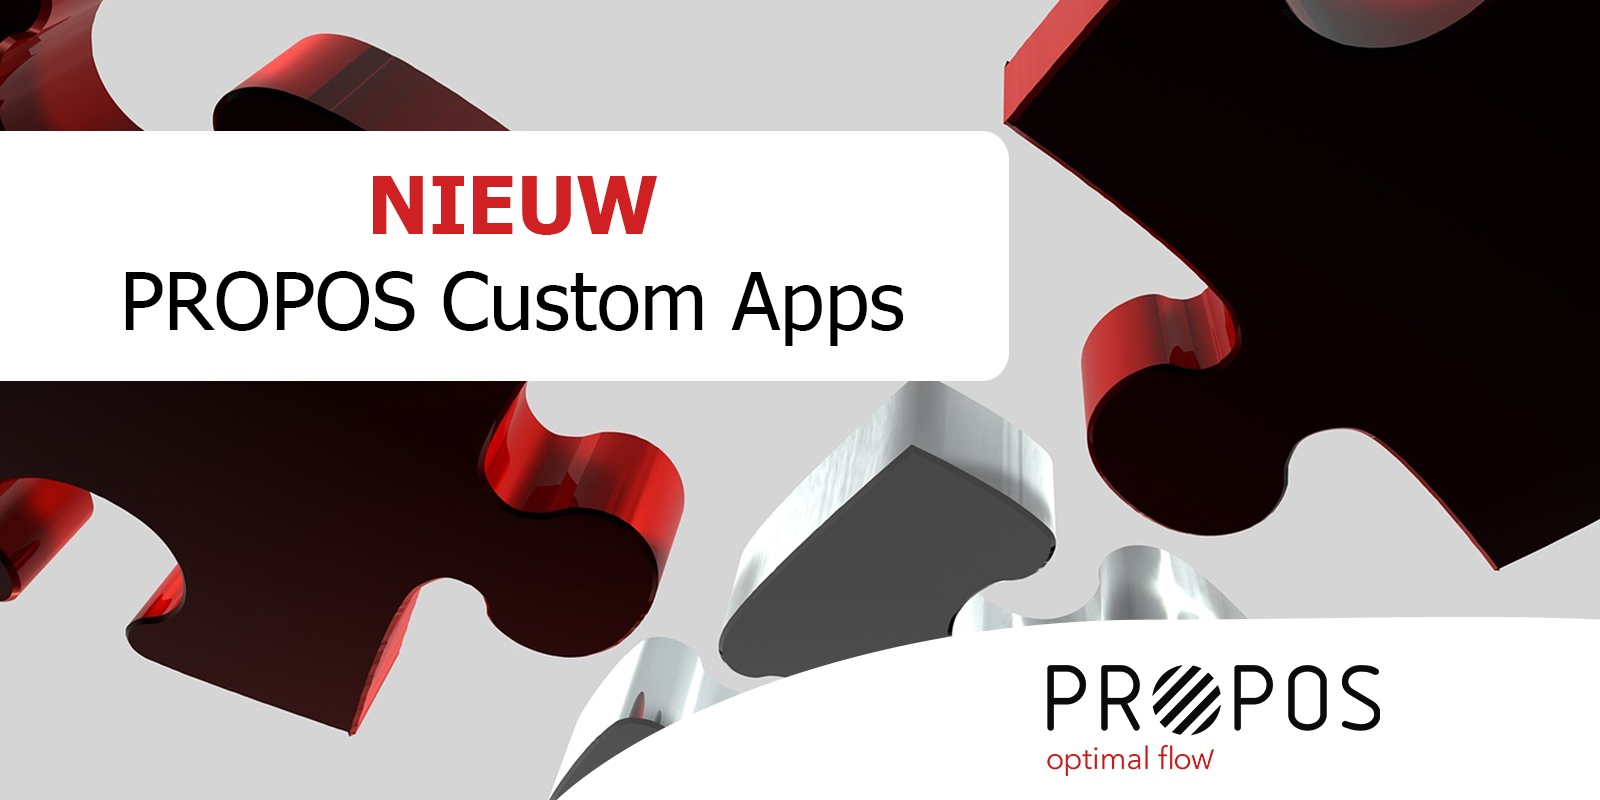 PROPOS als spil in uw productie: Custom Apps -